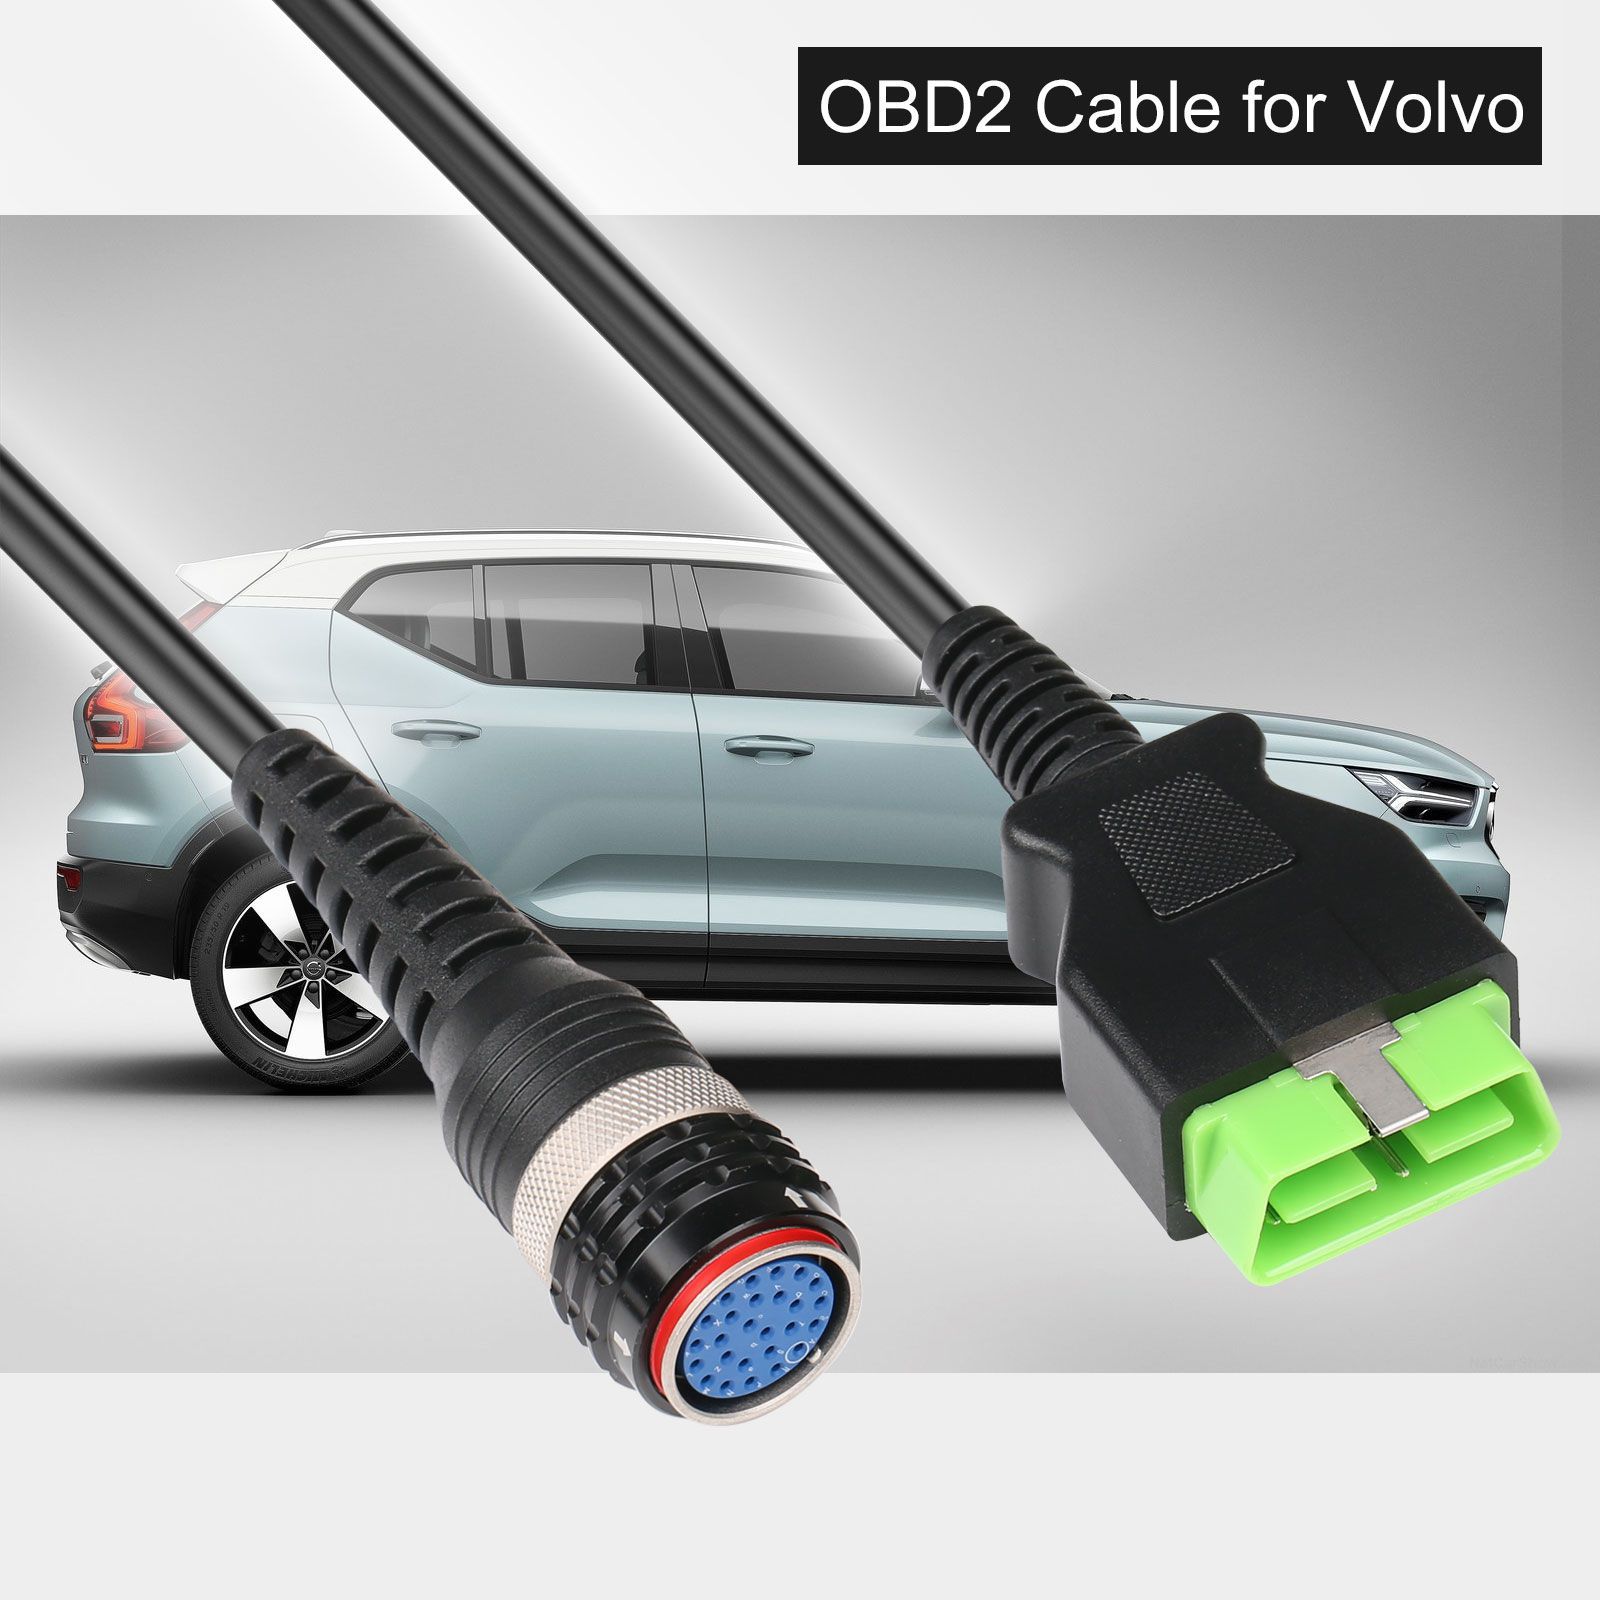  OBD2 Kabel für Volvo 88890304 Vocom Green Version